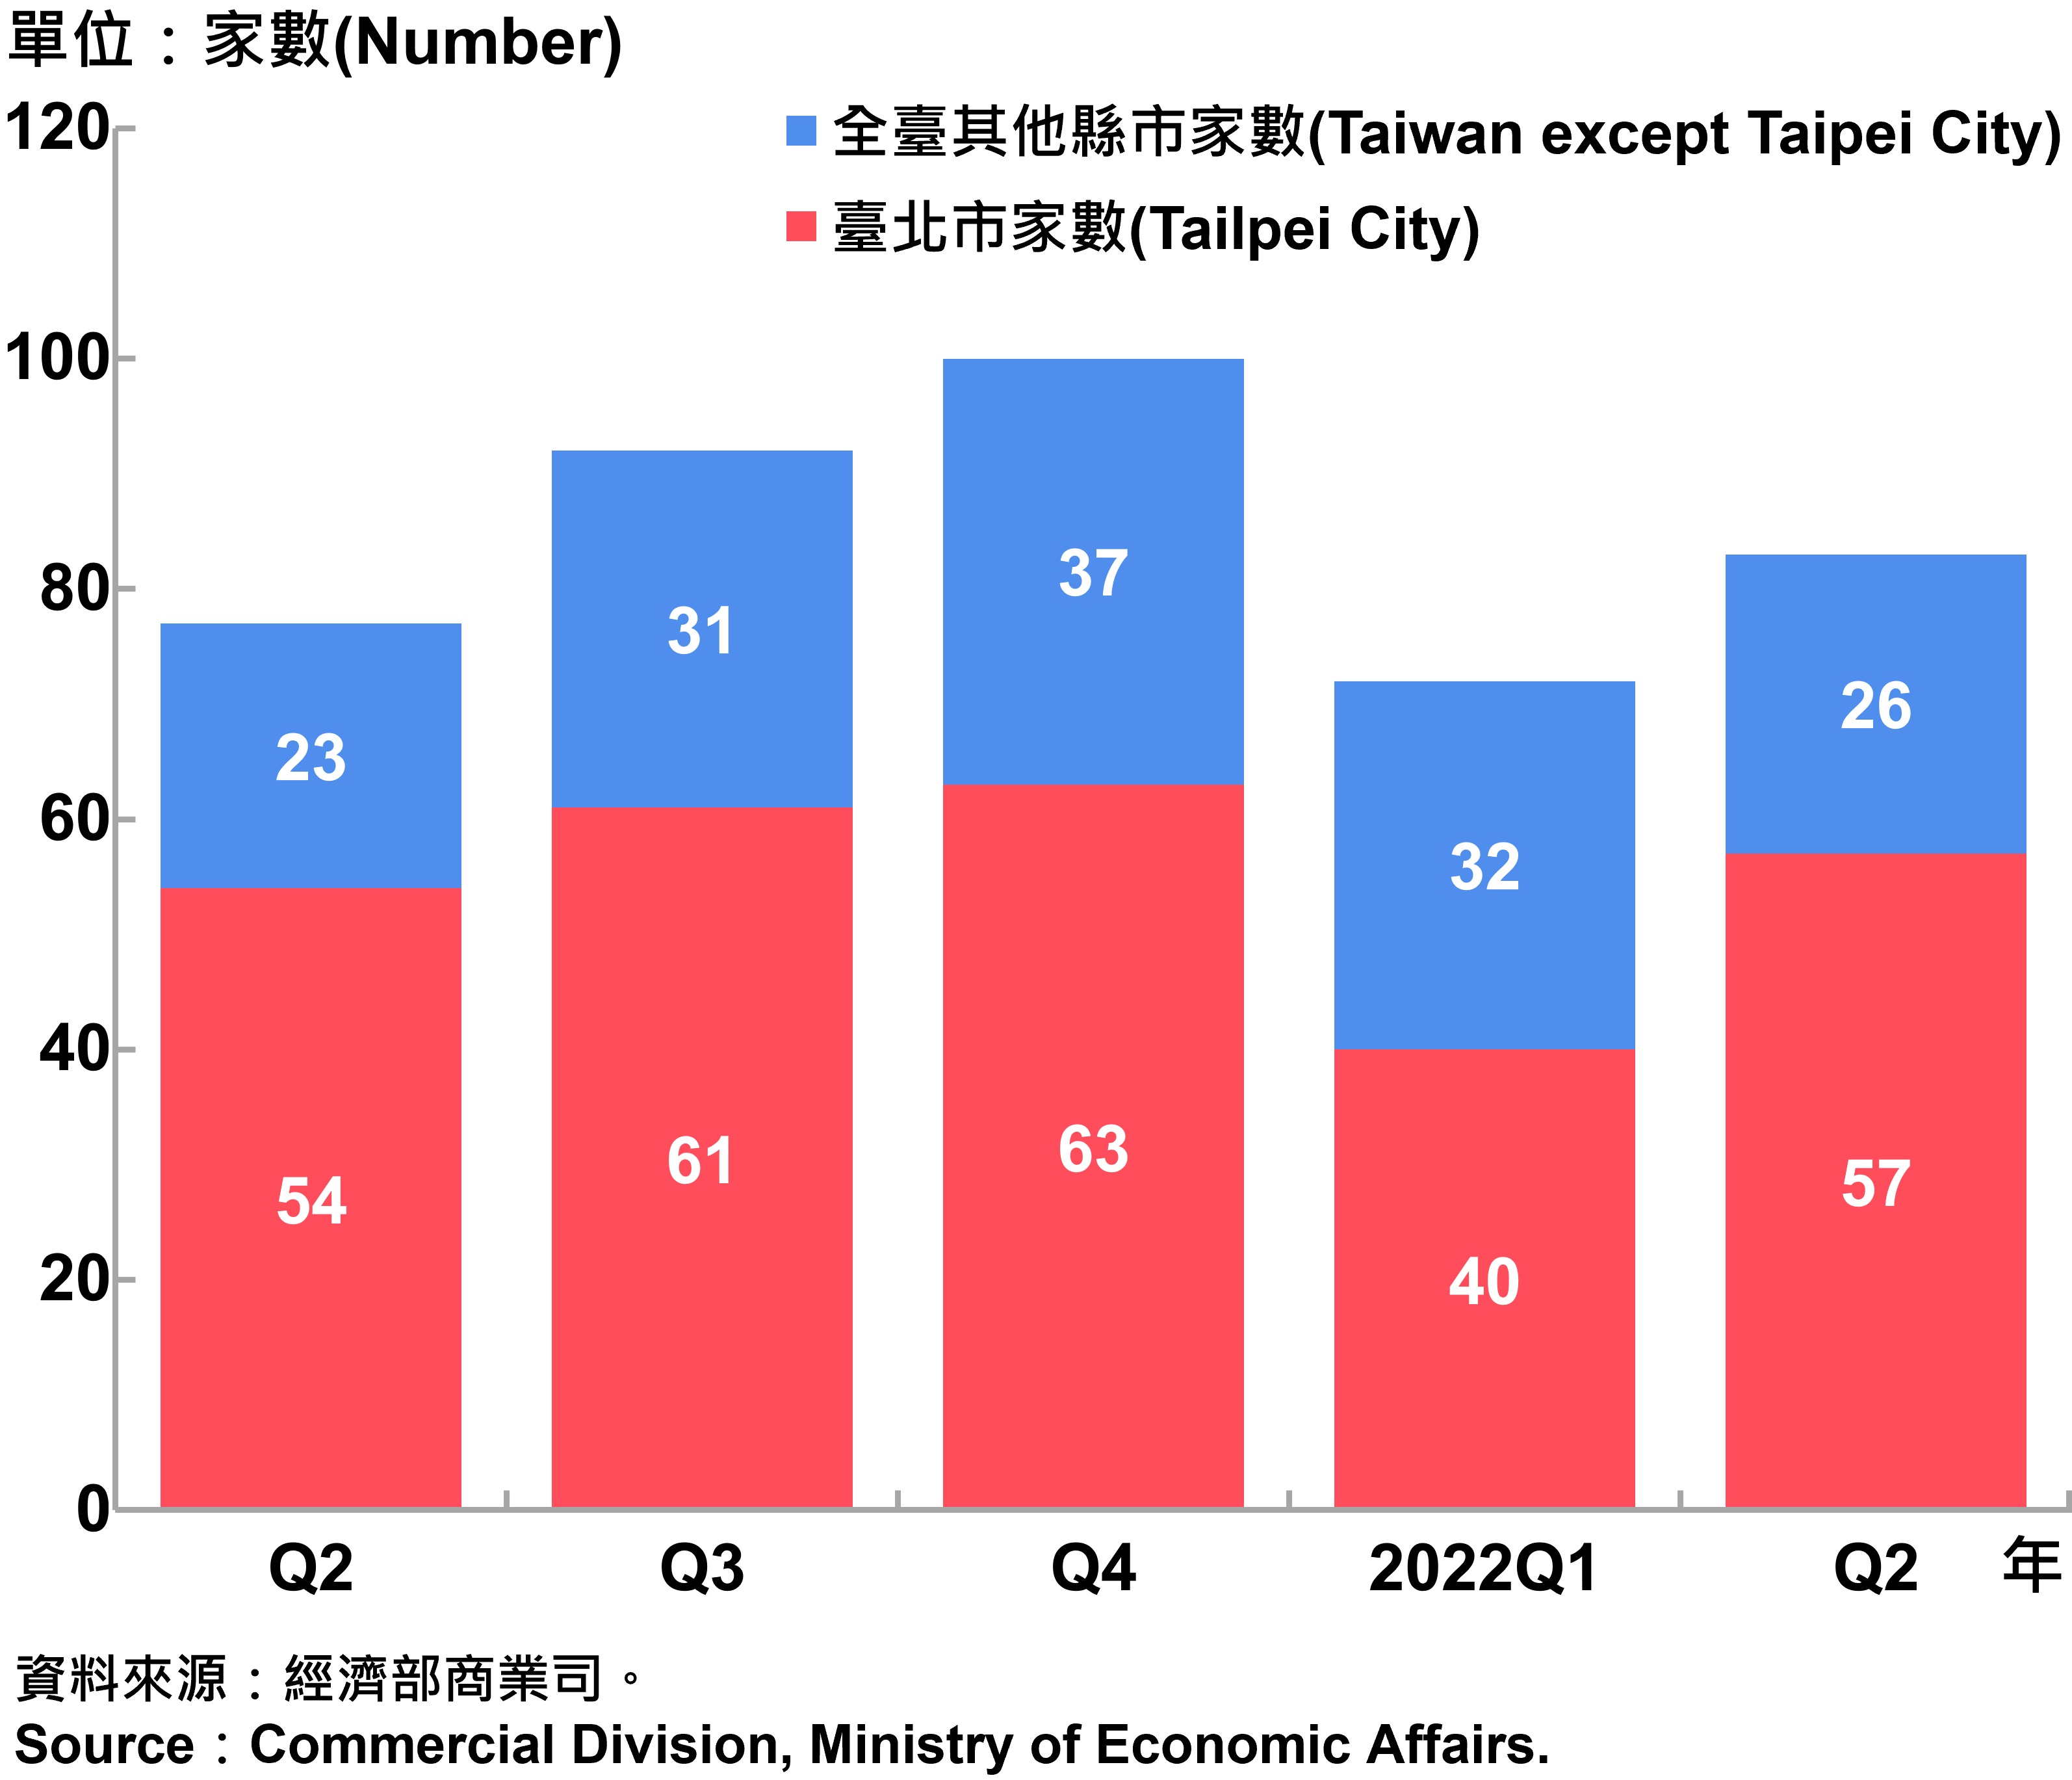 臺北市外商公司新設立家數—2022Q2 Number of Newly Established Foreign Companies in Taipei City—2022Q2